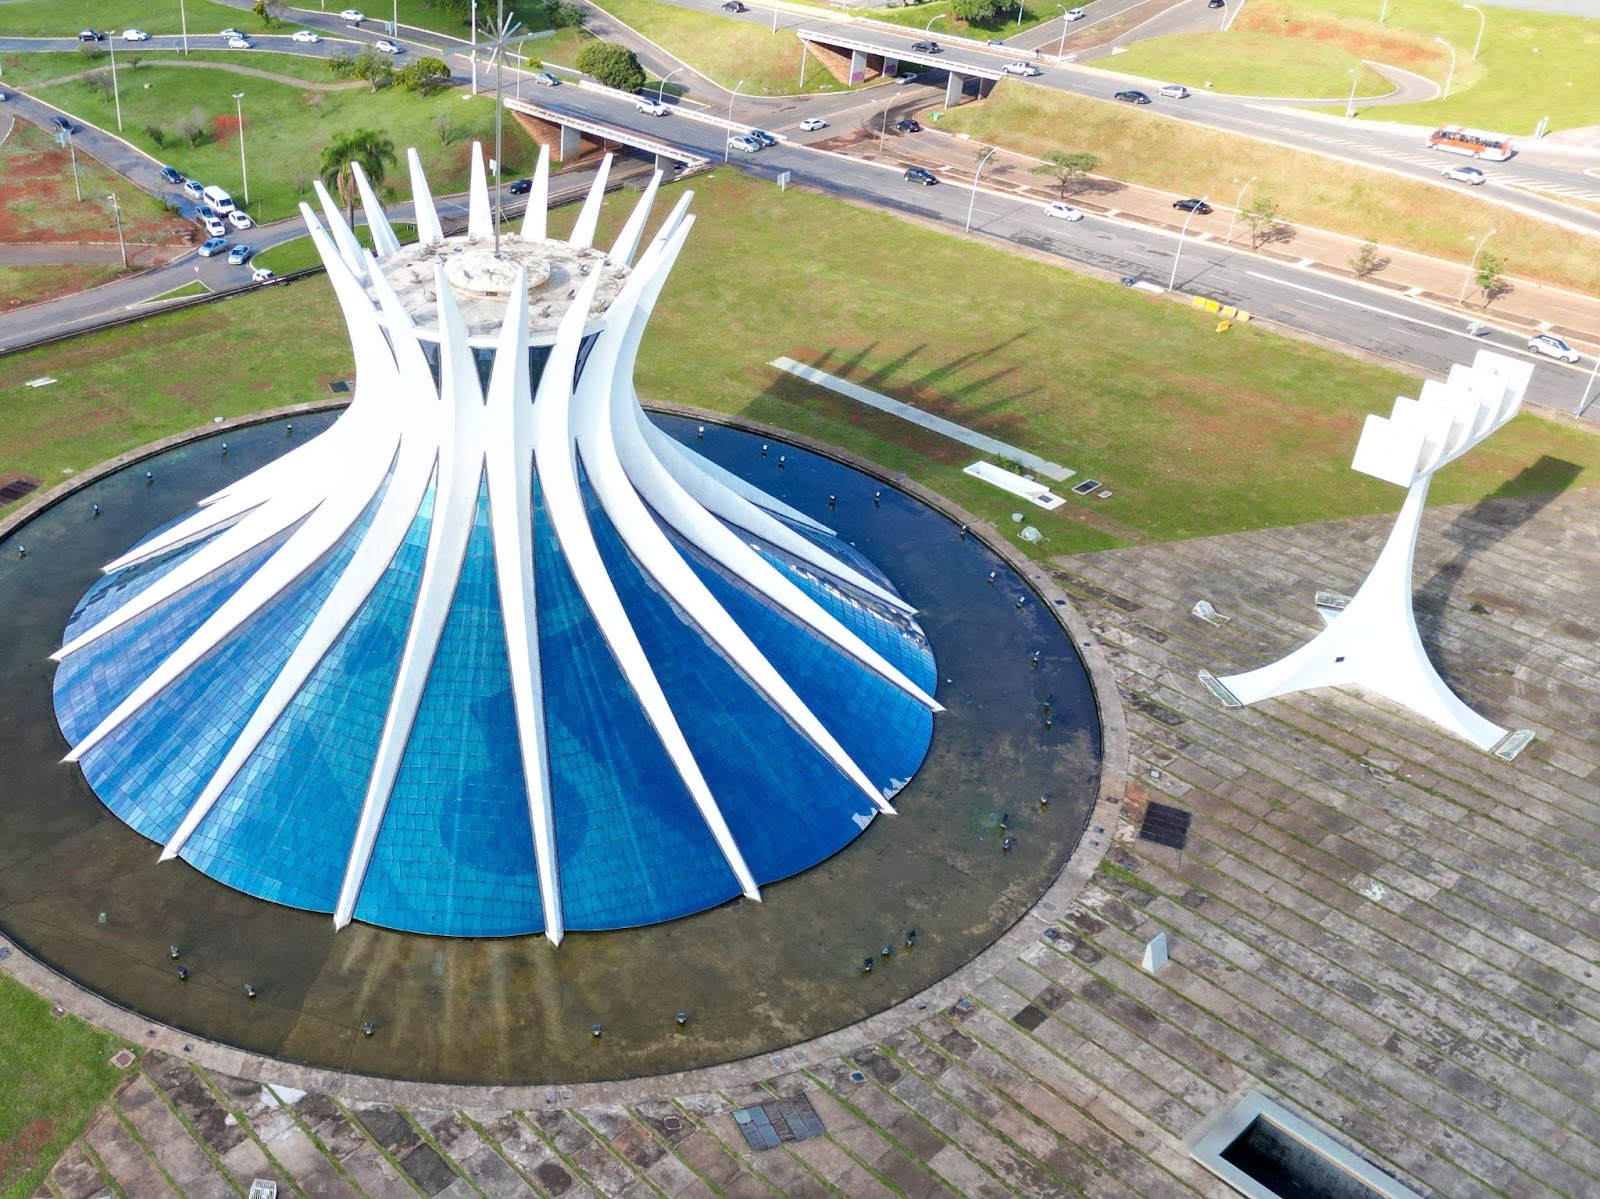 Catedral de Brasília vista de cima. O templo é rodeado por um espelho d’água em formato circular. À direita da entrada, aparece o campanário, estrutura similar a uma torre, onde ficam quatro sinos enfileirados.